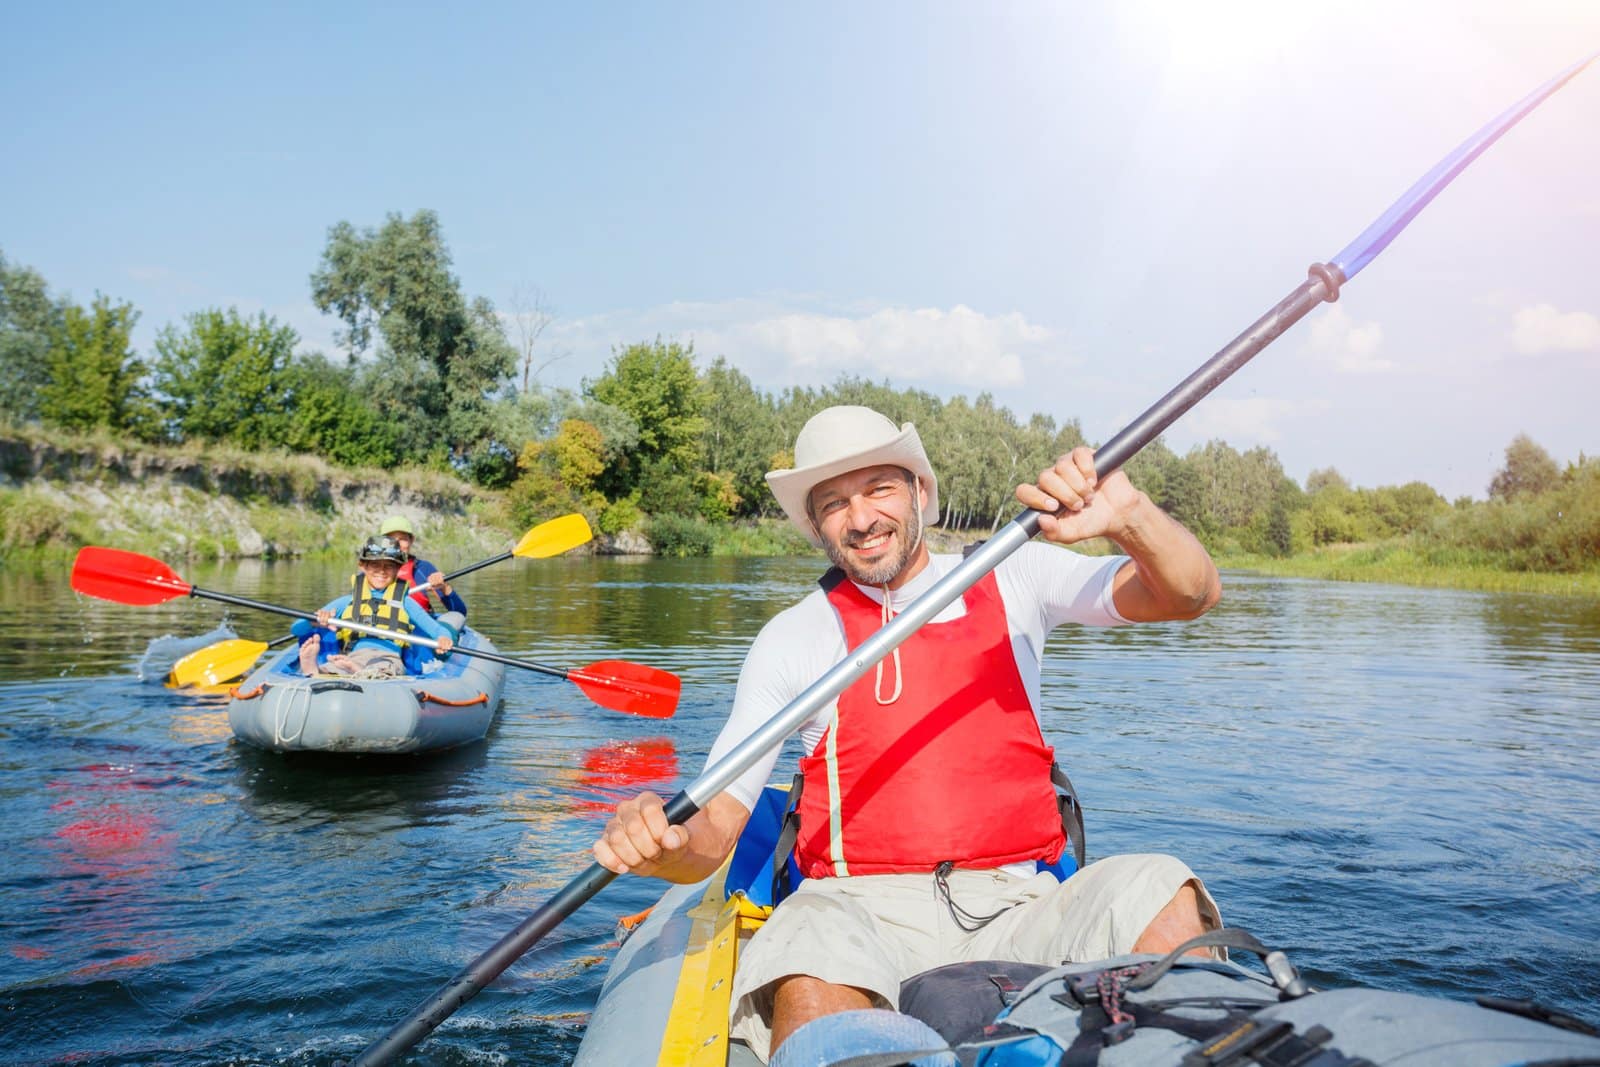 Kayak accessories for kayaking